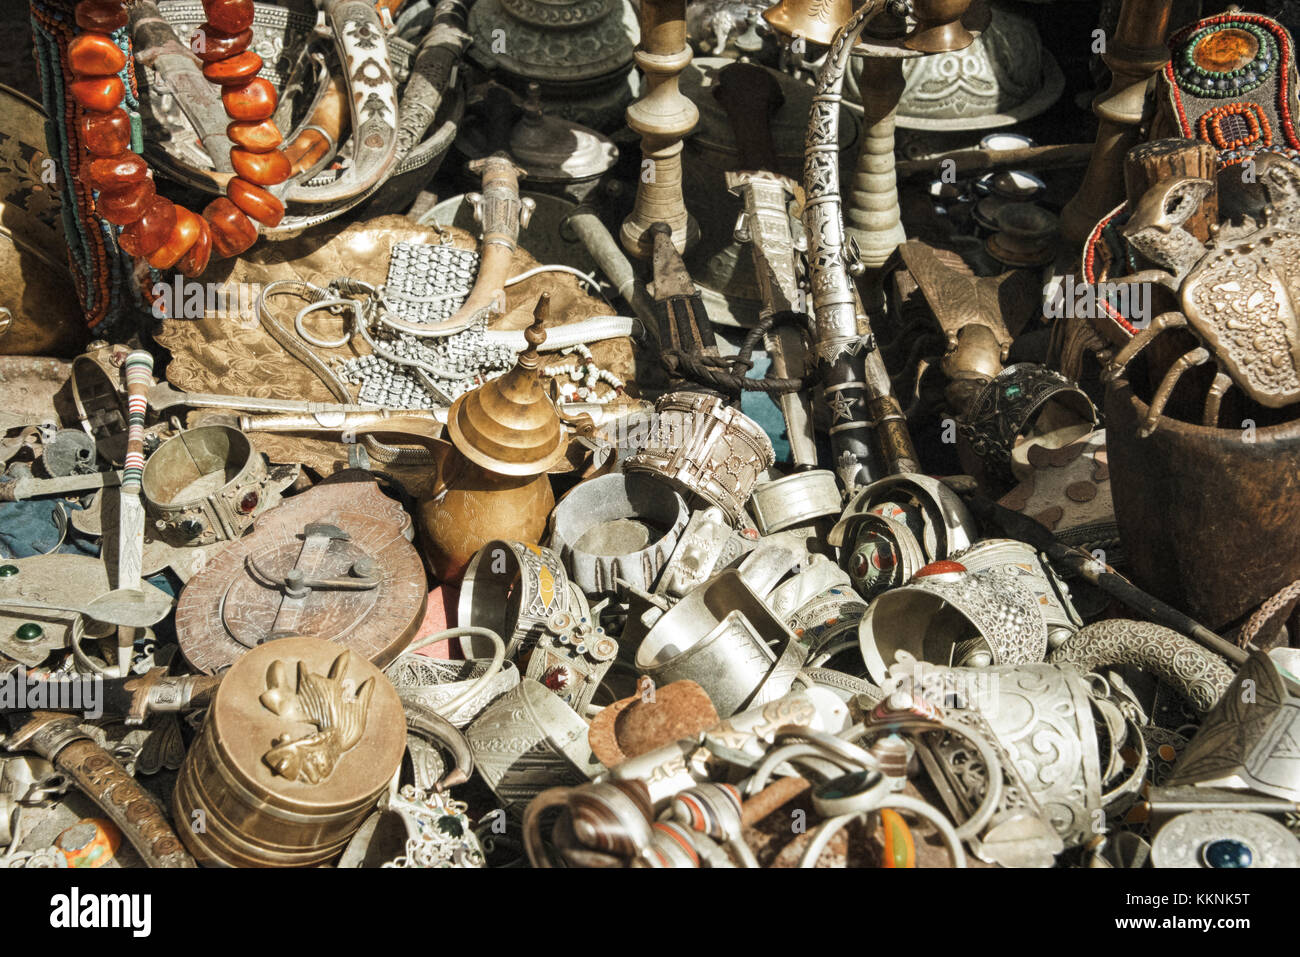 Essaouria, Maroc - septembre 2017 : guichet à bijoux vendant des théières, des bijoux et toutes sortes d'objets métalliques sur le marché Banque D'Images